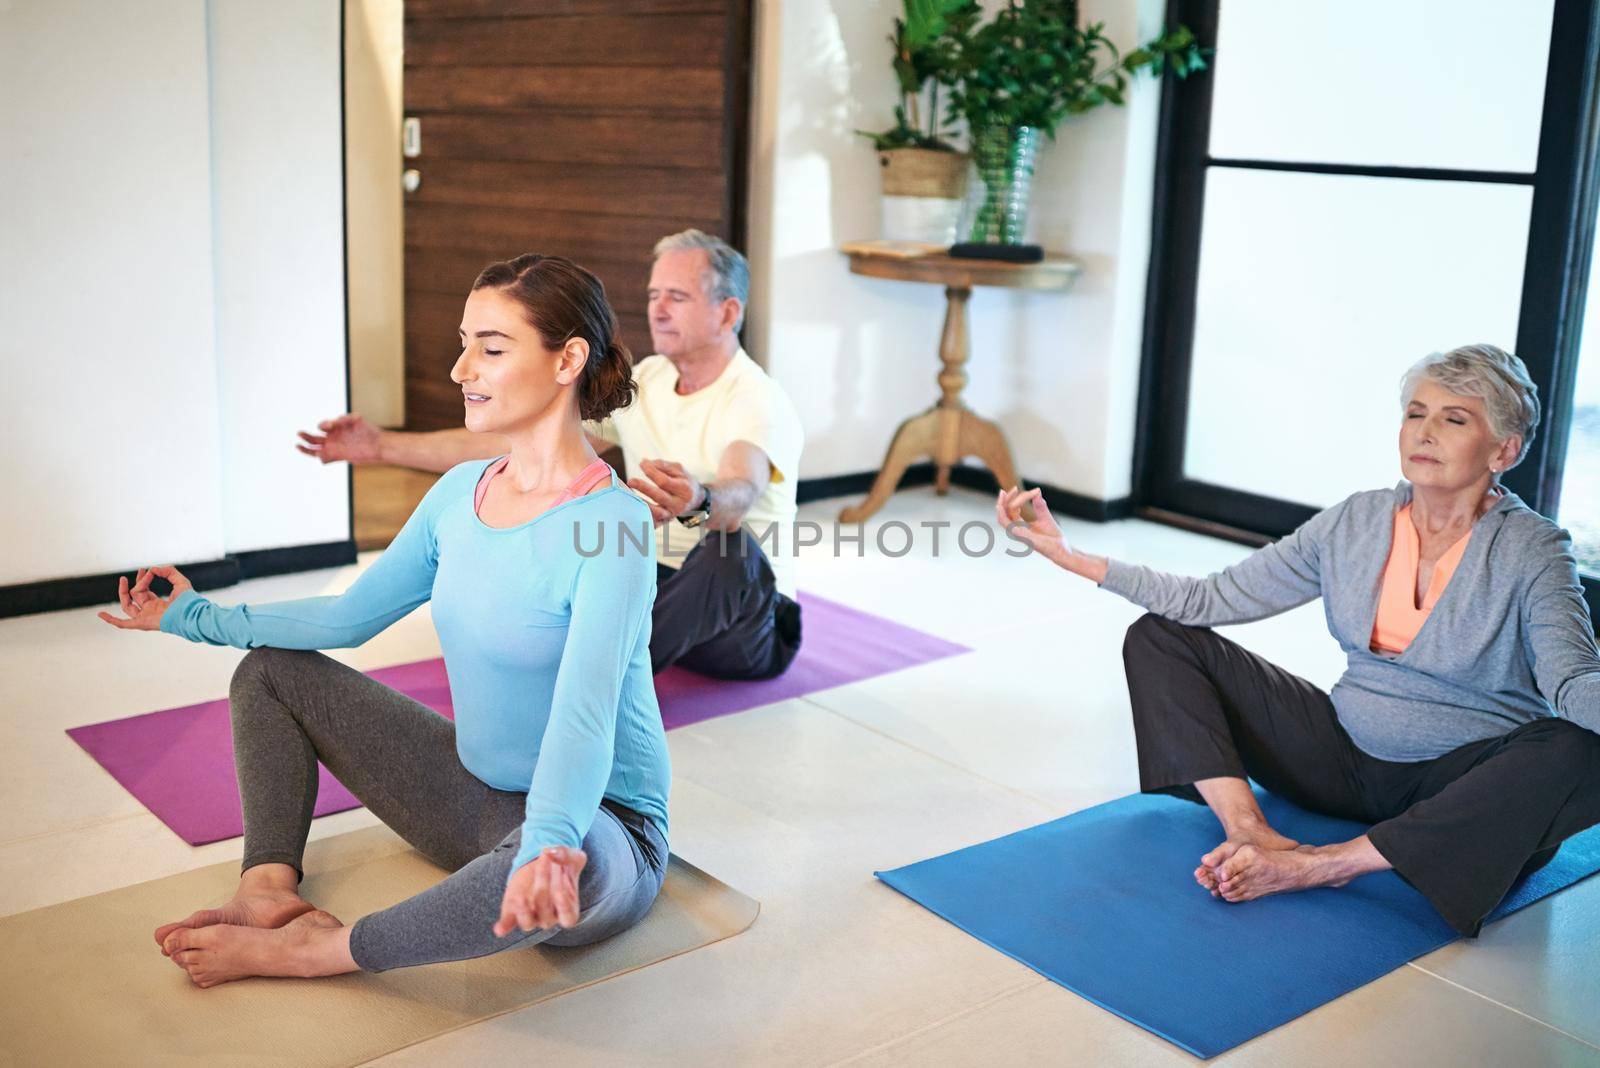 Finding zen. a yoga instructor guiding a senior couple in a yoga class